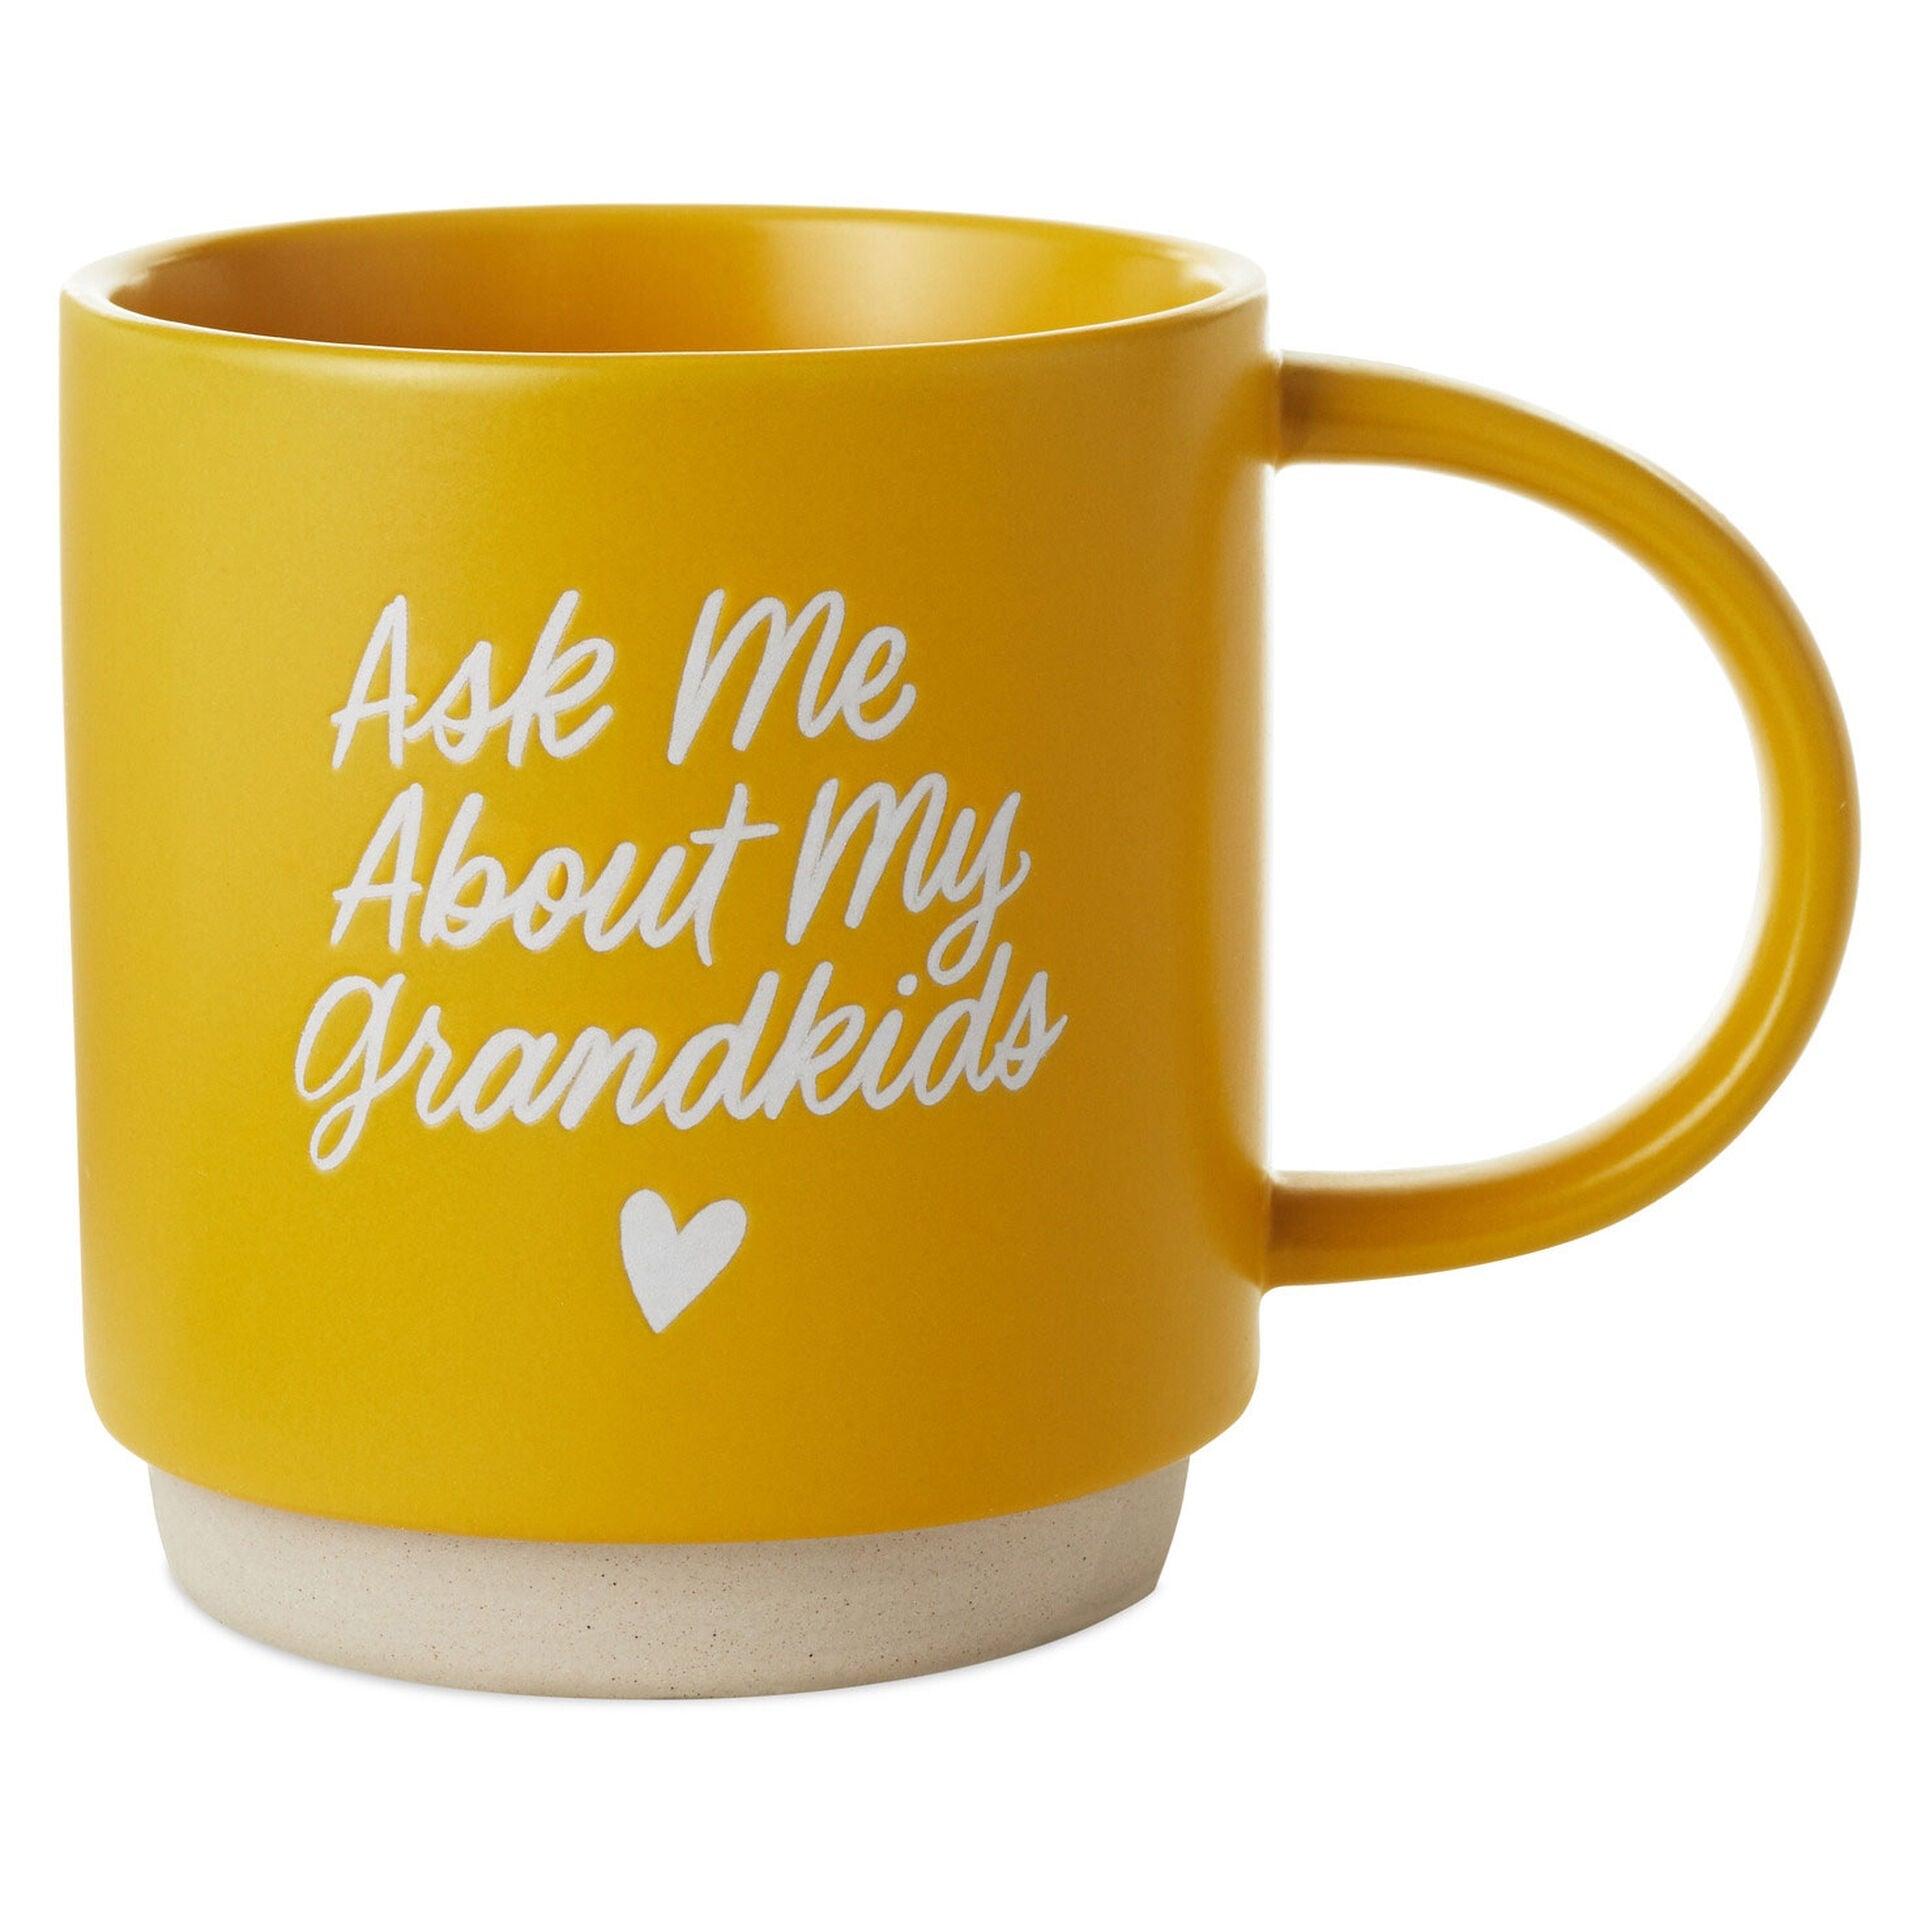 Ask Me About My Grandkids Mug, 16 oz.